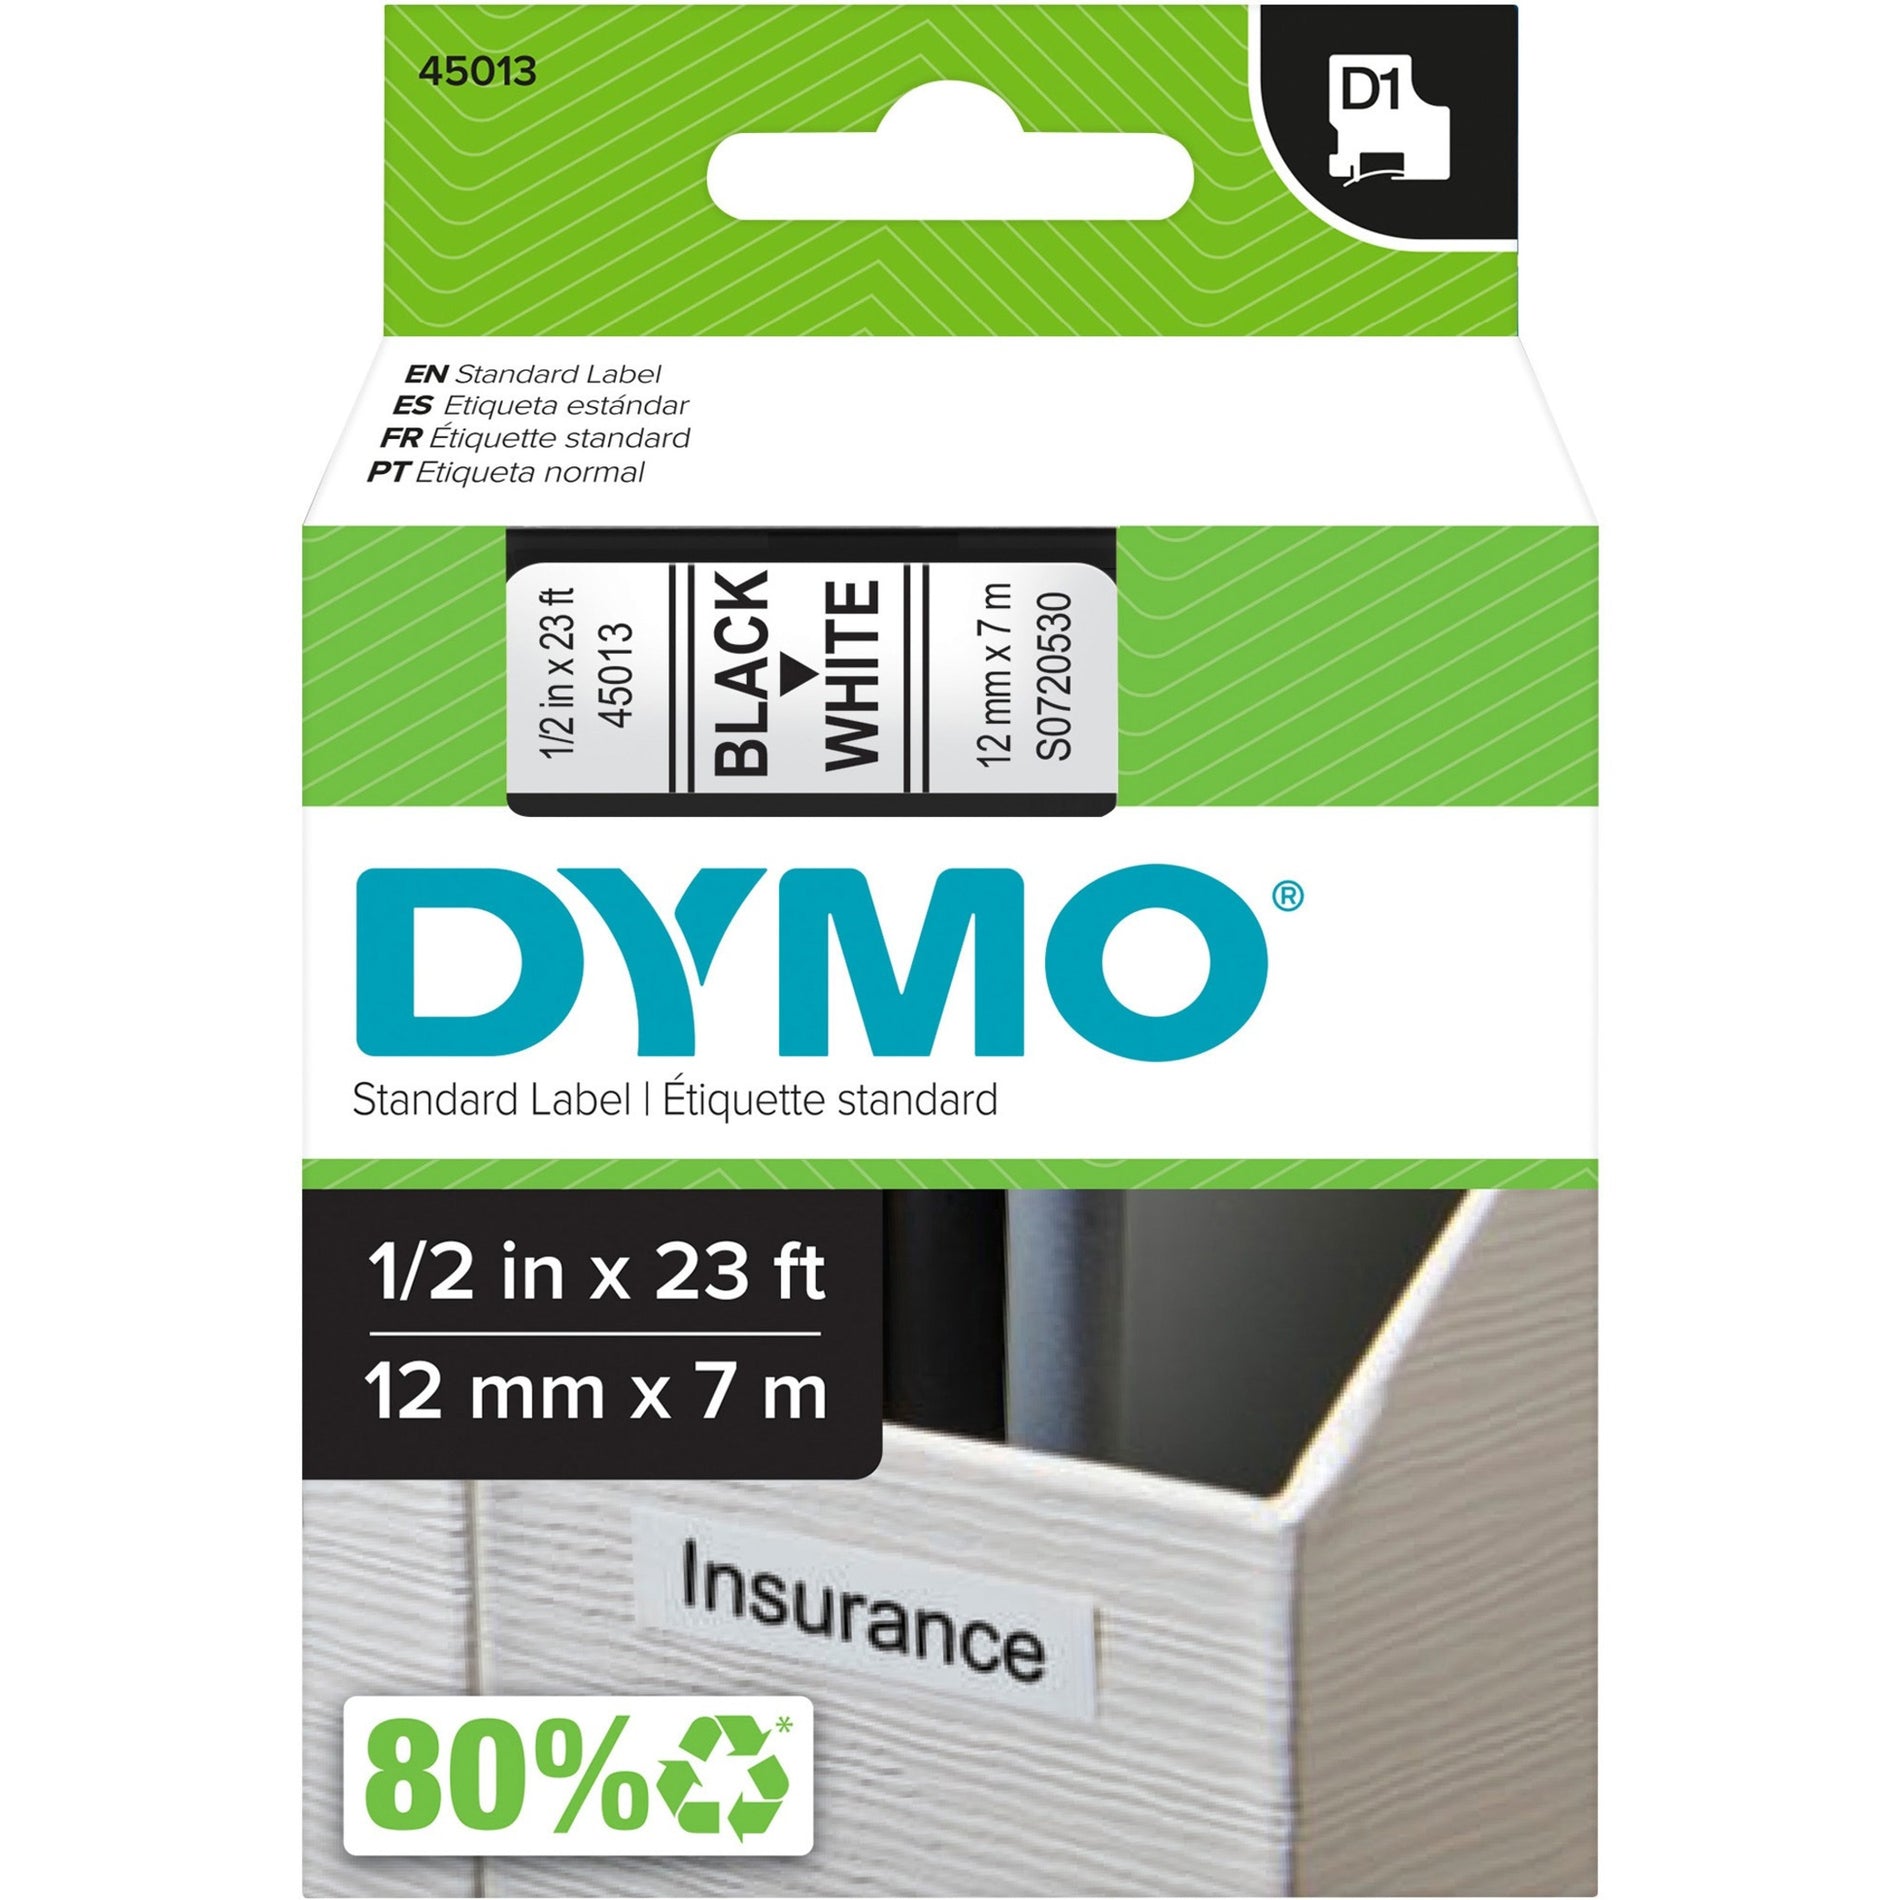 Dymo 45013 D1 Electronic Tape Cartridge, 1/2"x23' Size, Black/White